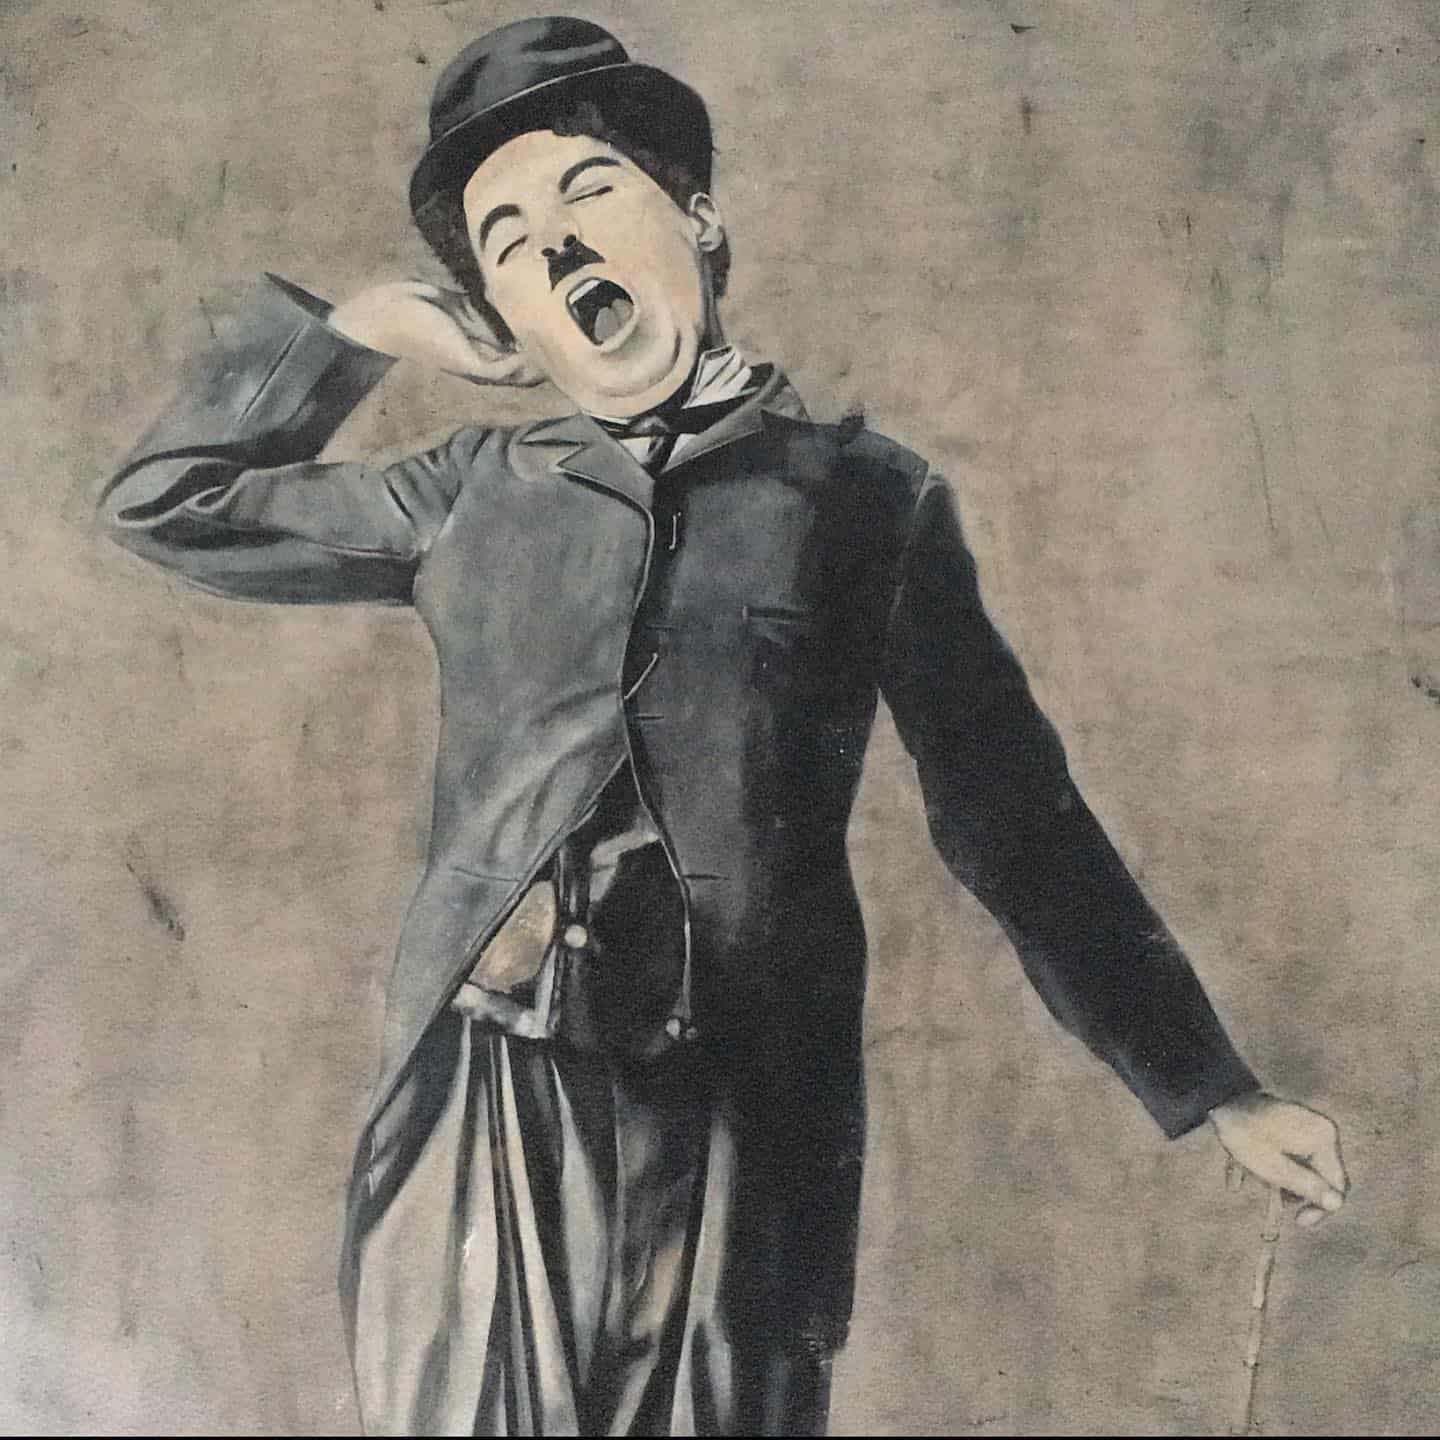 “You’ll find that life is still worthwhile, if you just smile” - Charlie Chaplin#artbyJSVJ #JSVJ #jannejohannessen #charliechaplin #charlie #chaplin #100x150 #Lookingforanewhome #forsale #maleri #painting #kunst #art #artwork #acrylicpainting #akryl #portrait #portraits #afro #contempoaryart #modernart #danishart #interior #indretning #vægmaleri #vægkunst #kunsttilvæggen #canvas #loveart #artlover